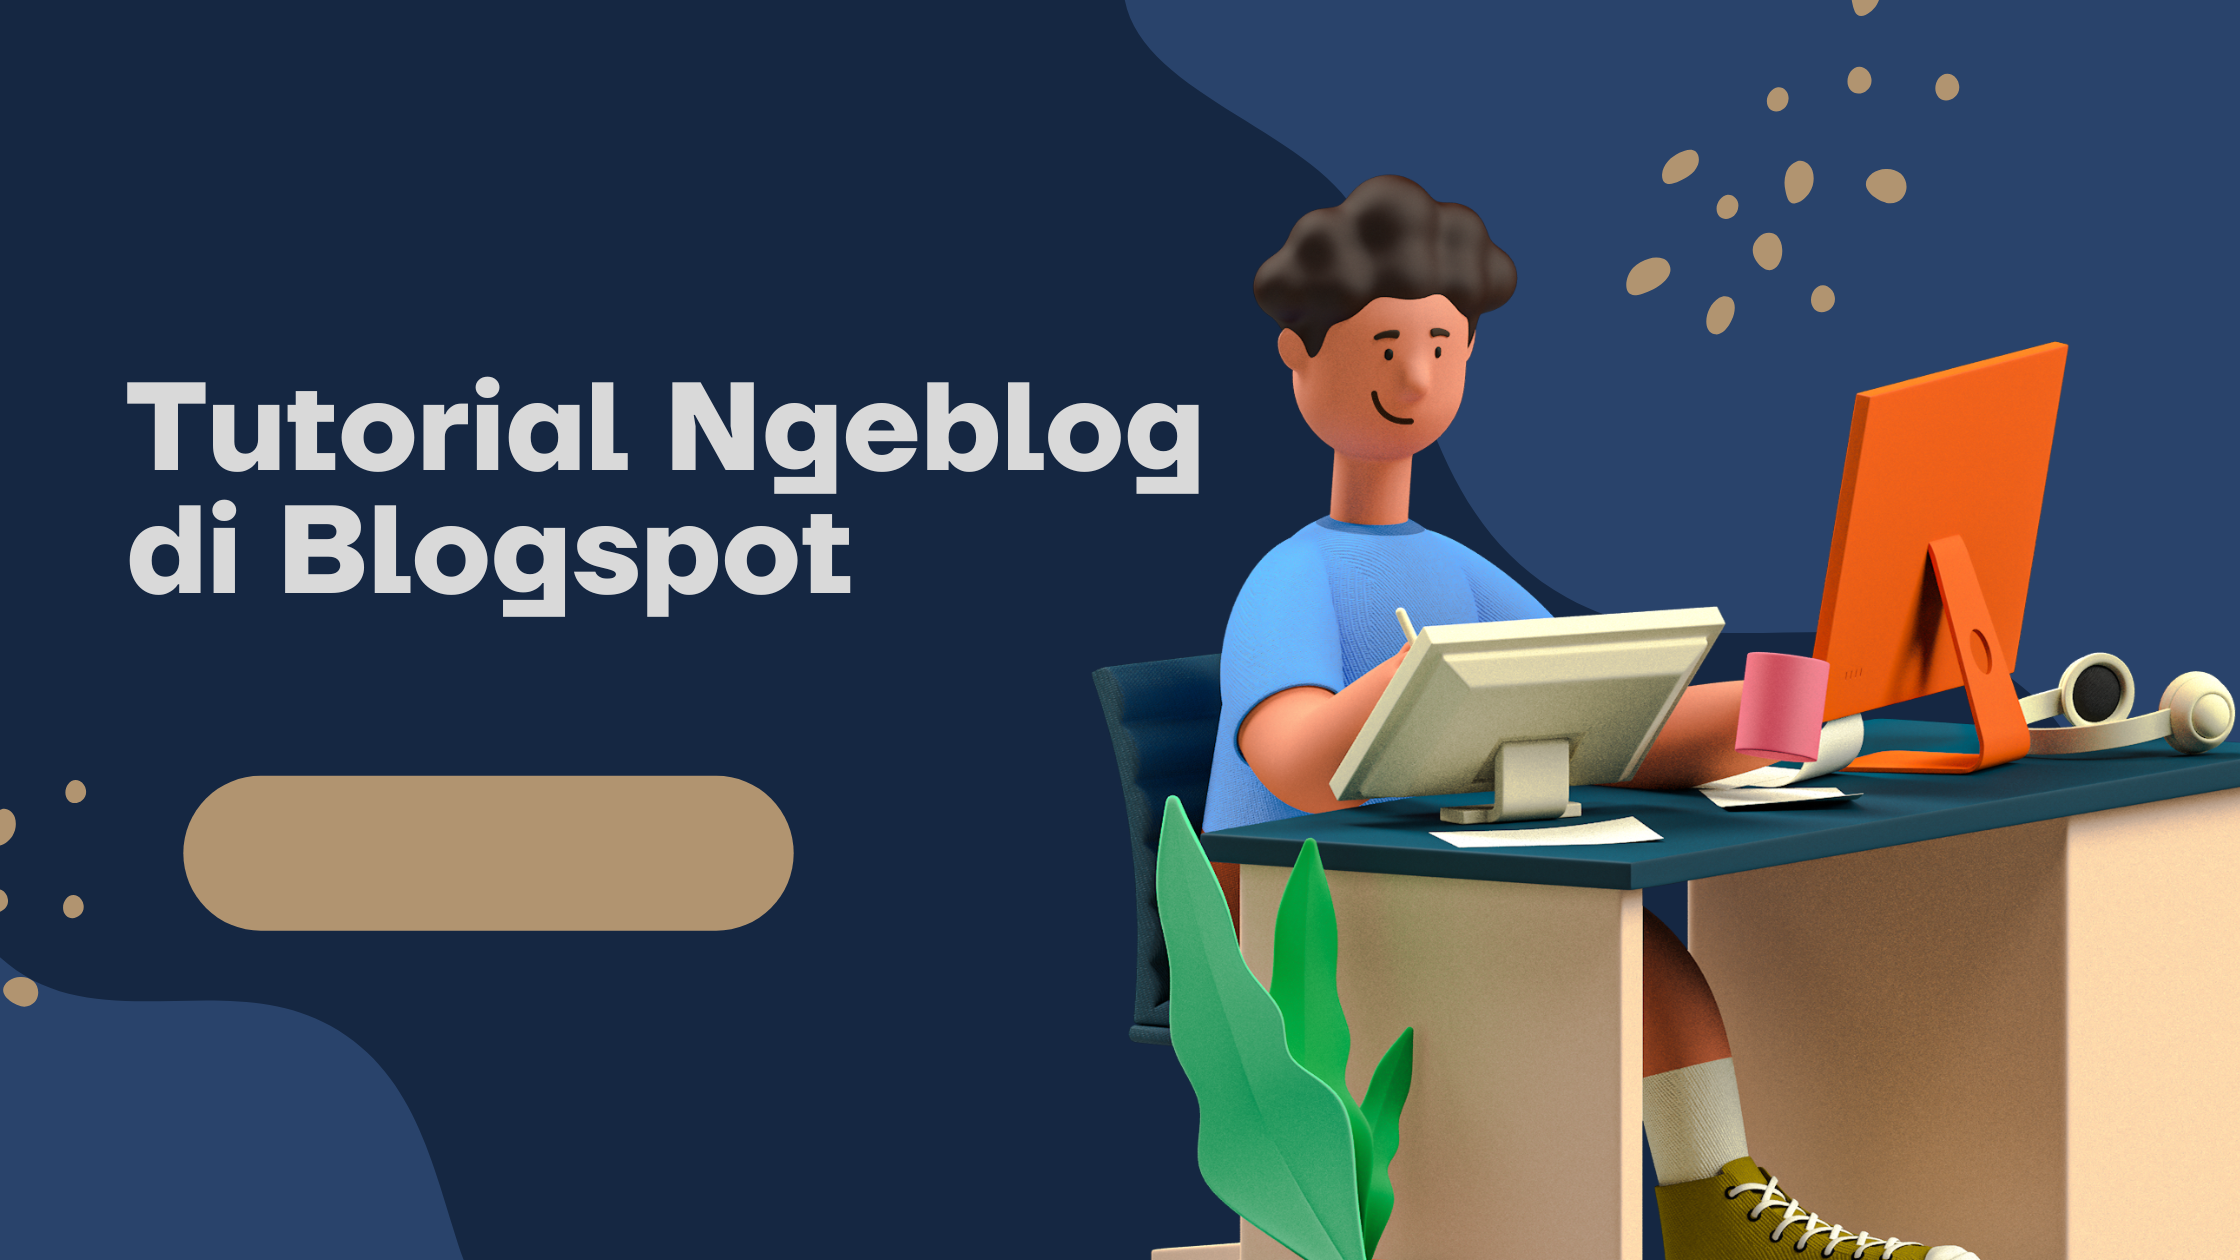 Tutorial Blogger dengan blogspot. Cara membuat blog gratis dan menghasilkan uang